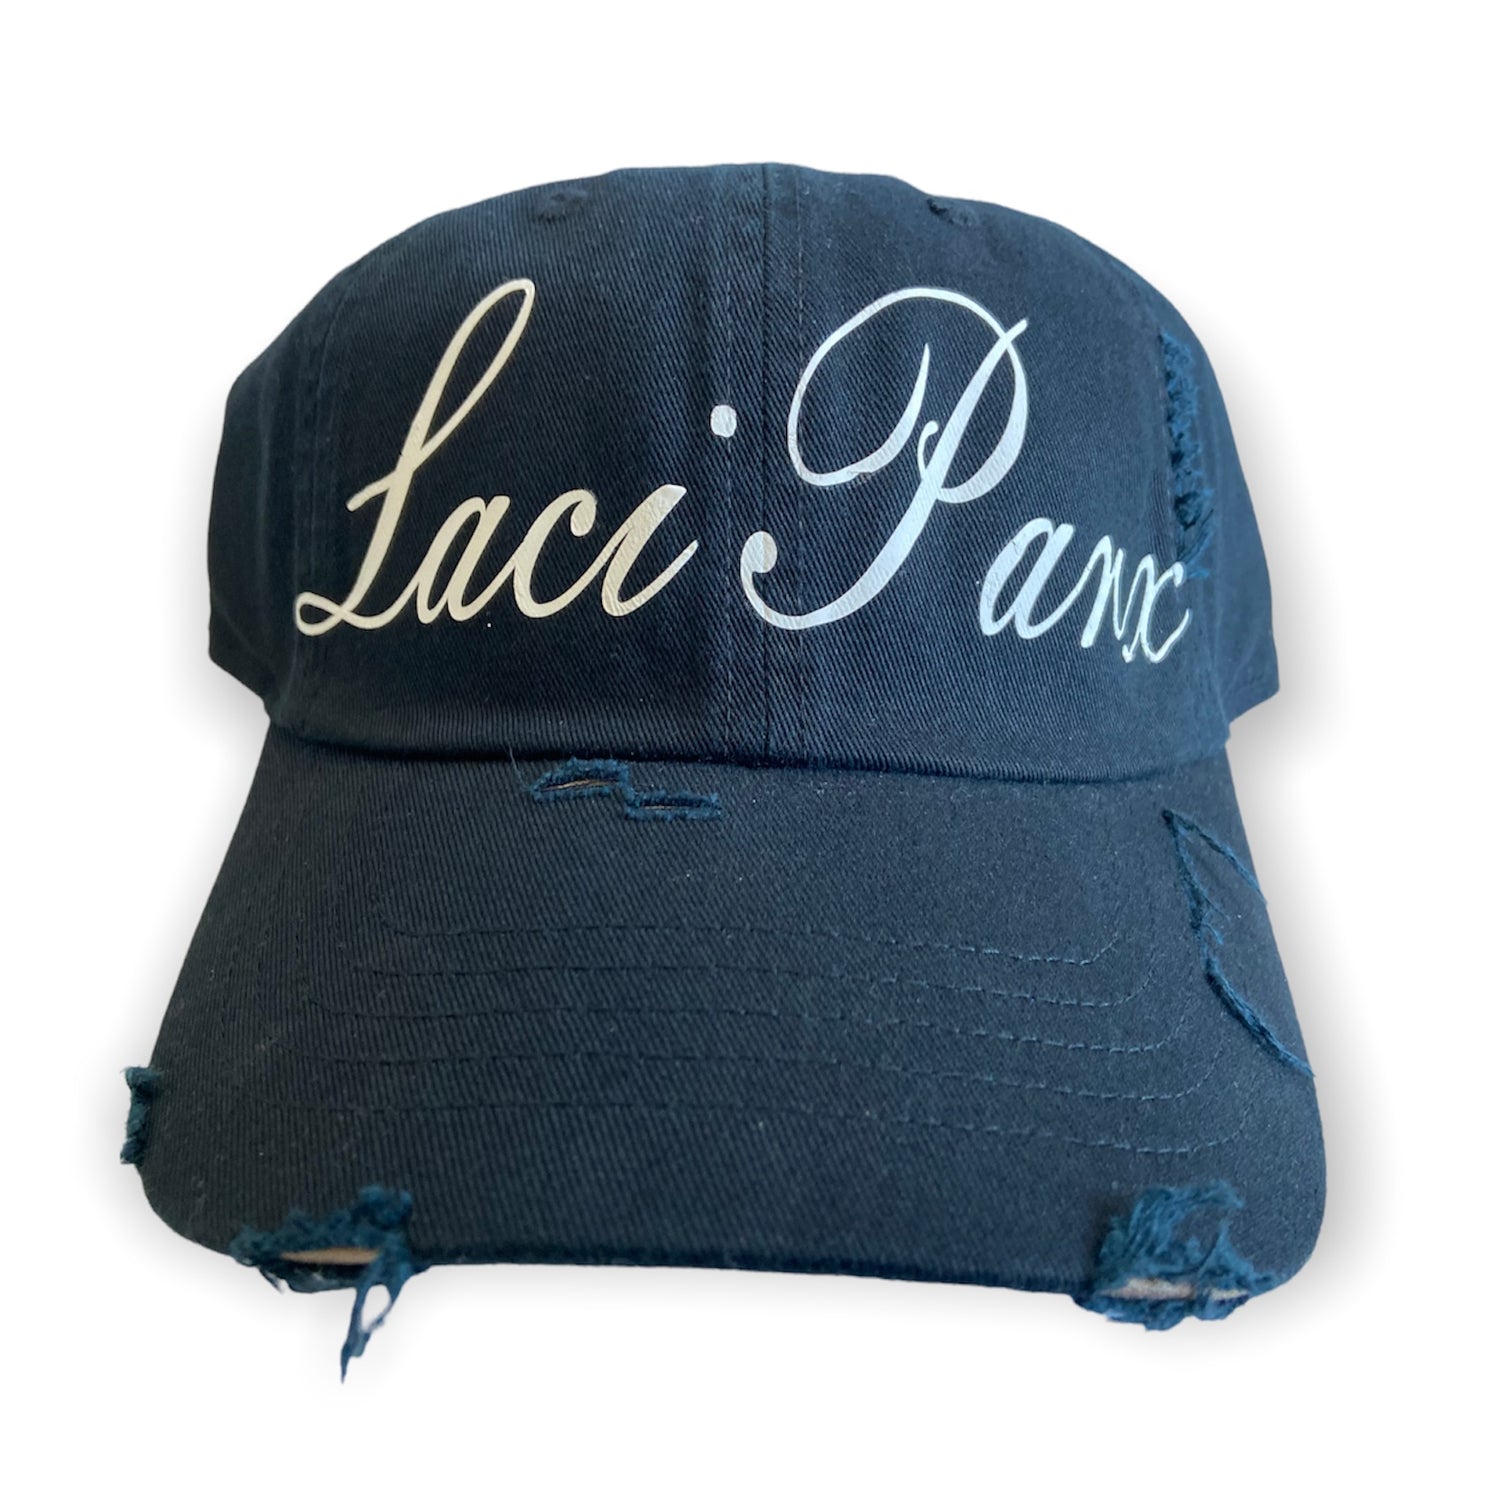 Laci Parx chapeau (hat) | Luxury Fragrance Brand | LaciParxCollection